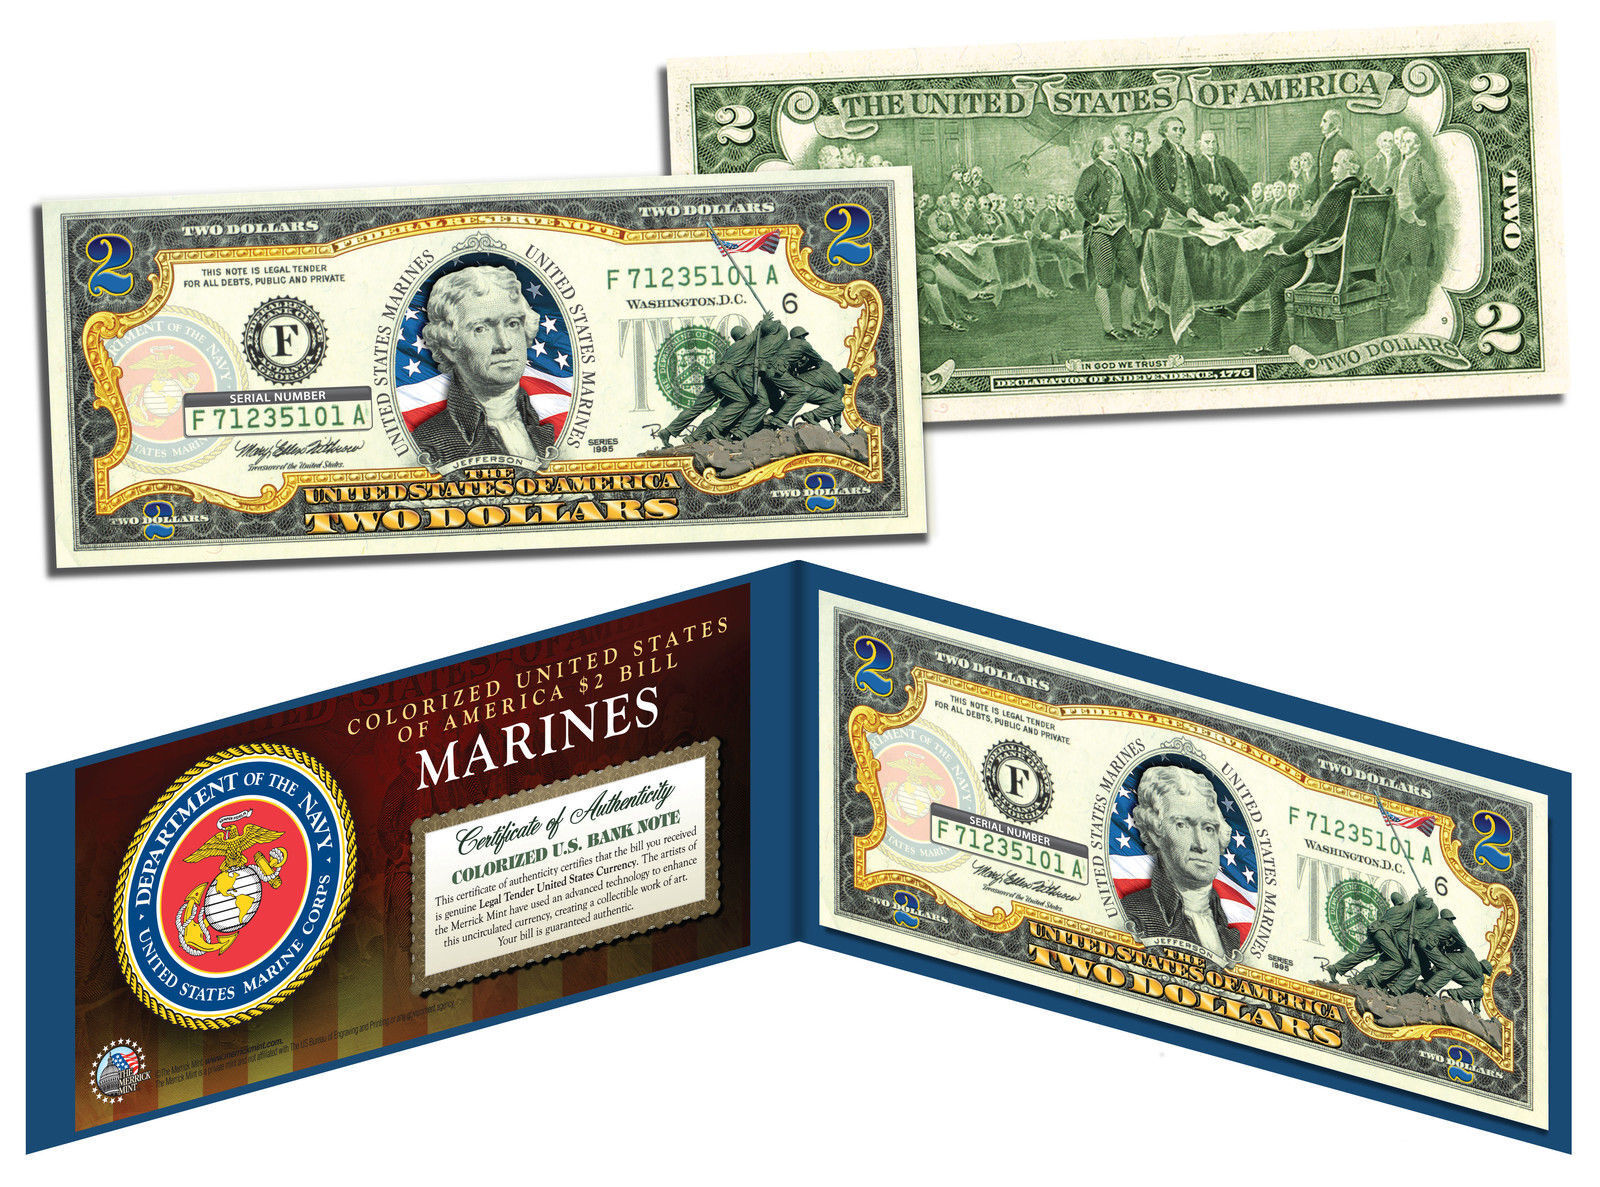 U.S. MARINES World War II Vintage U.S. Genuine Legal Tender $2 Bill *MUST SEE*